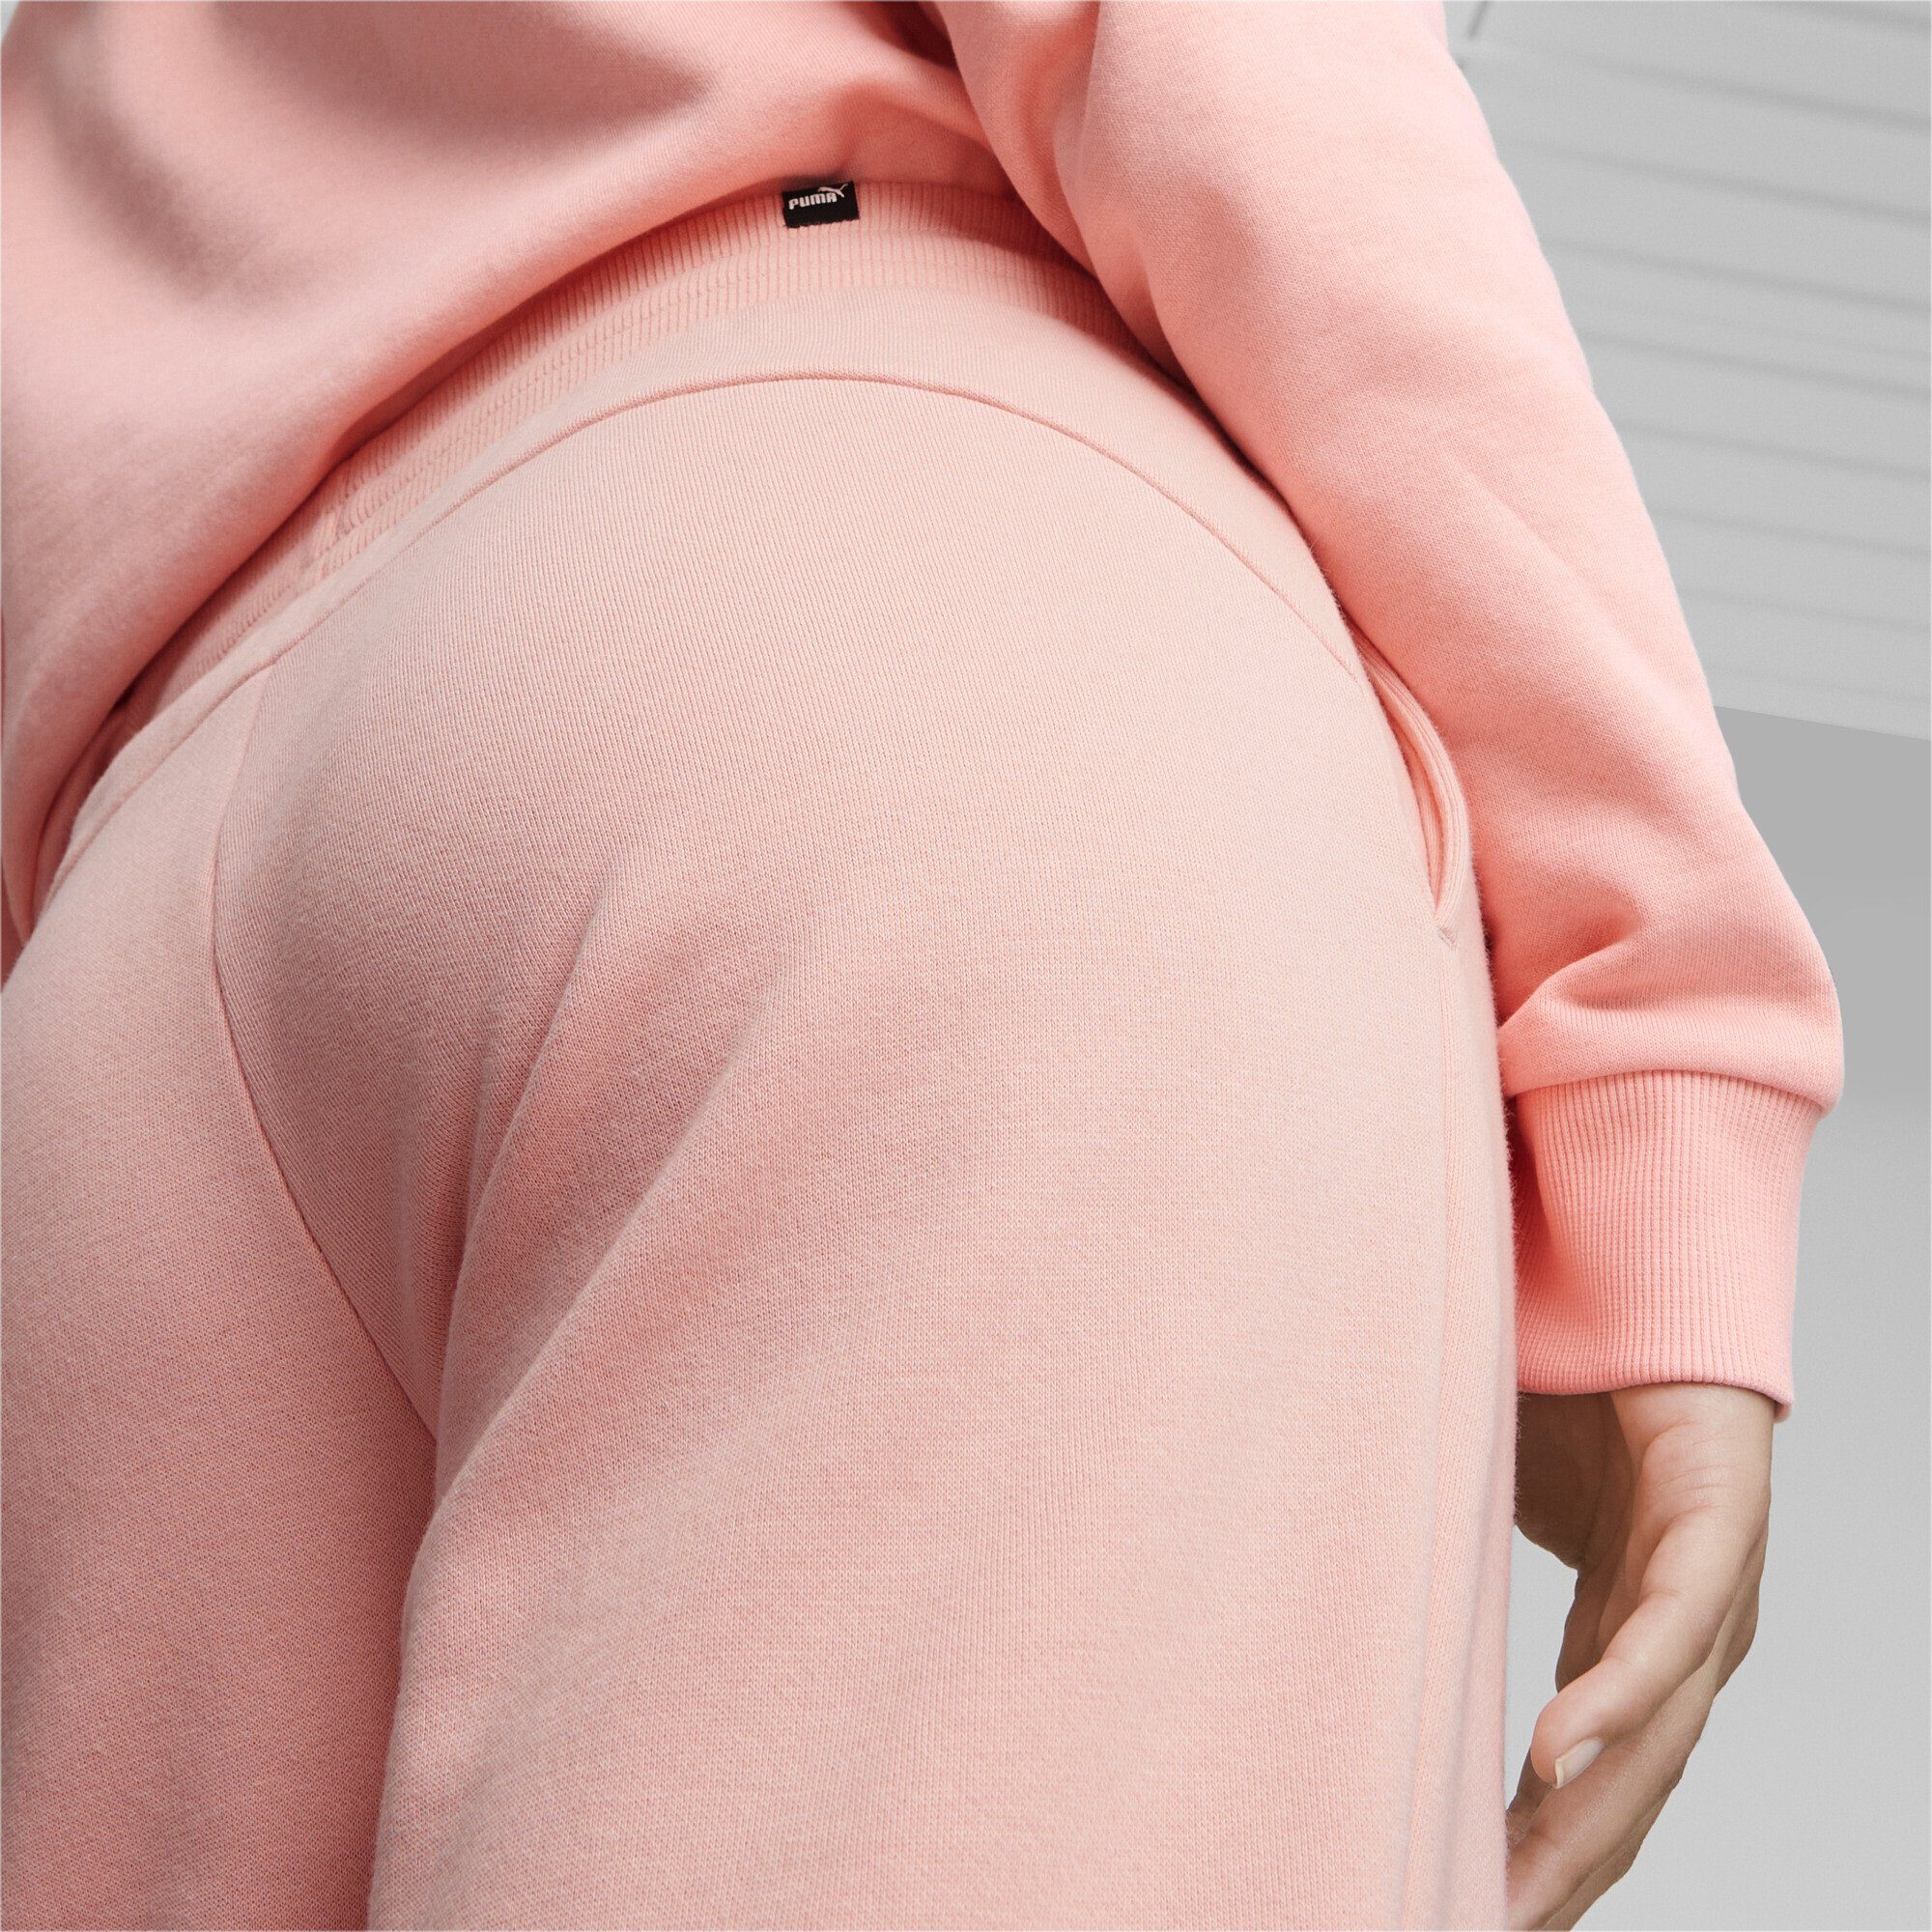 Damen Jogginghose Pink Sporthose Smoothie PUMA Essentials Peach